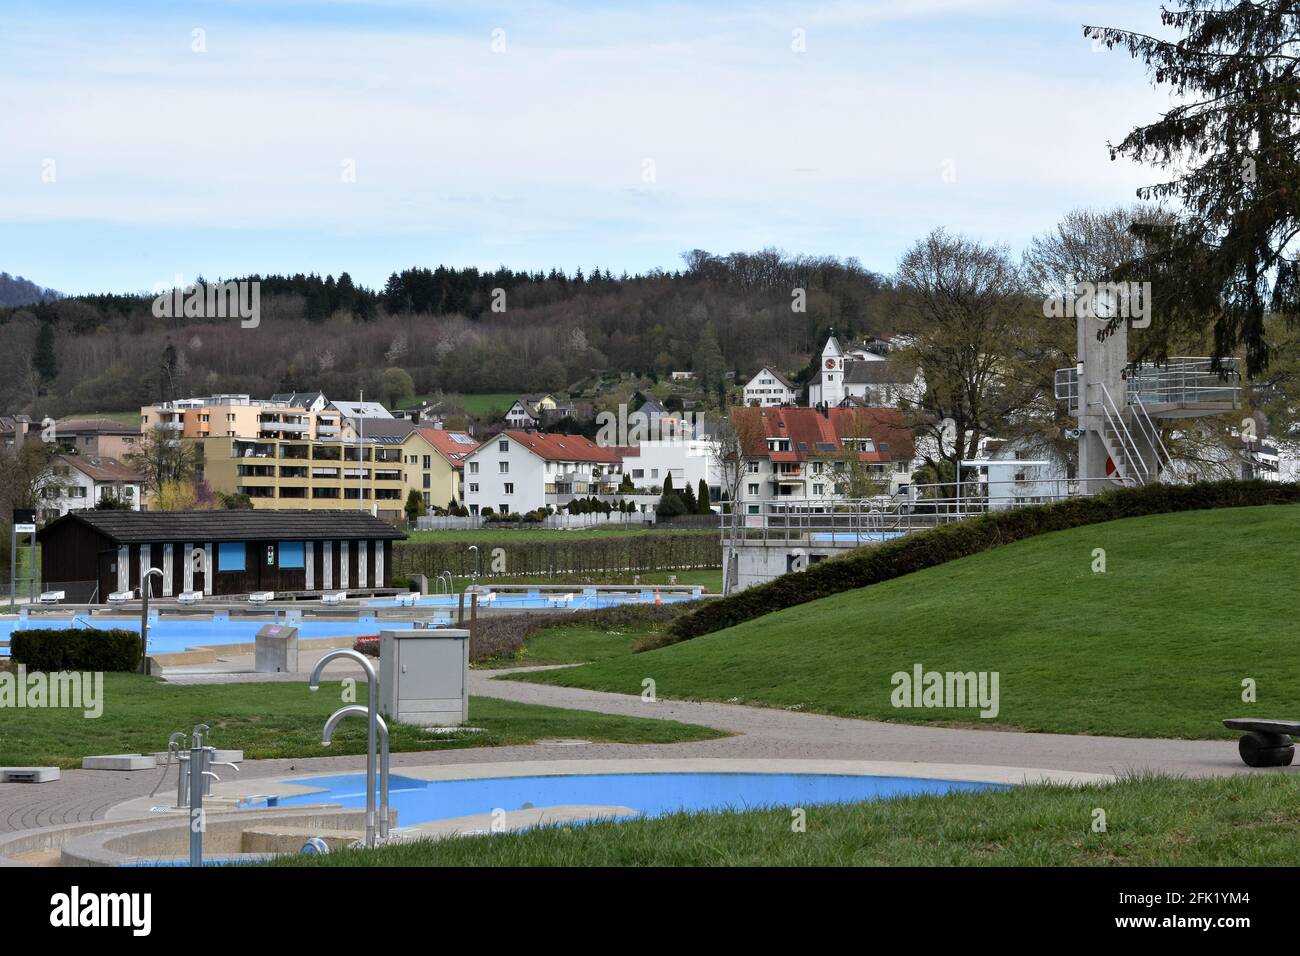 Piscine publique dans le village de Birmensdorf , canton de Zurich, Suisse. Les piscines sont peintes en bleu clair et sont vides. Banque D'Images